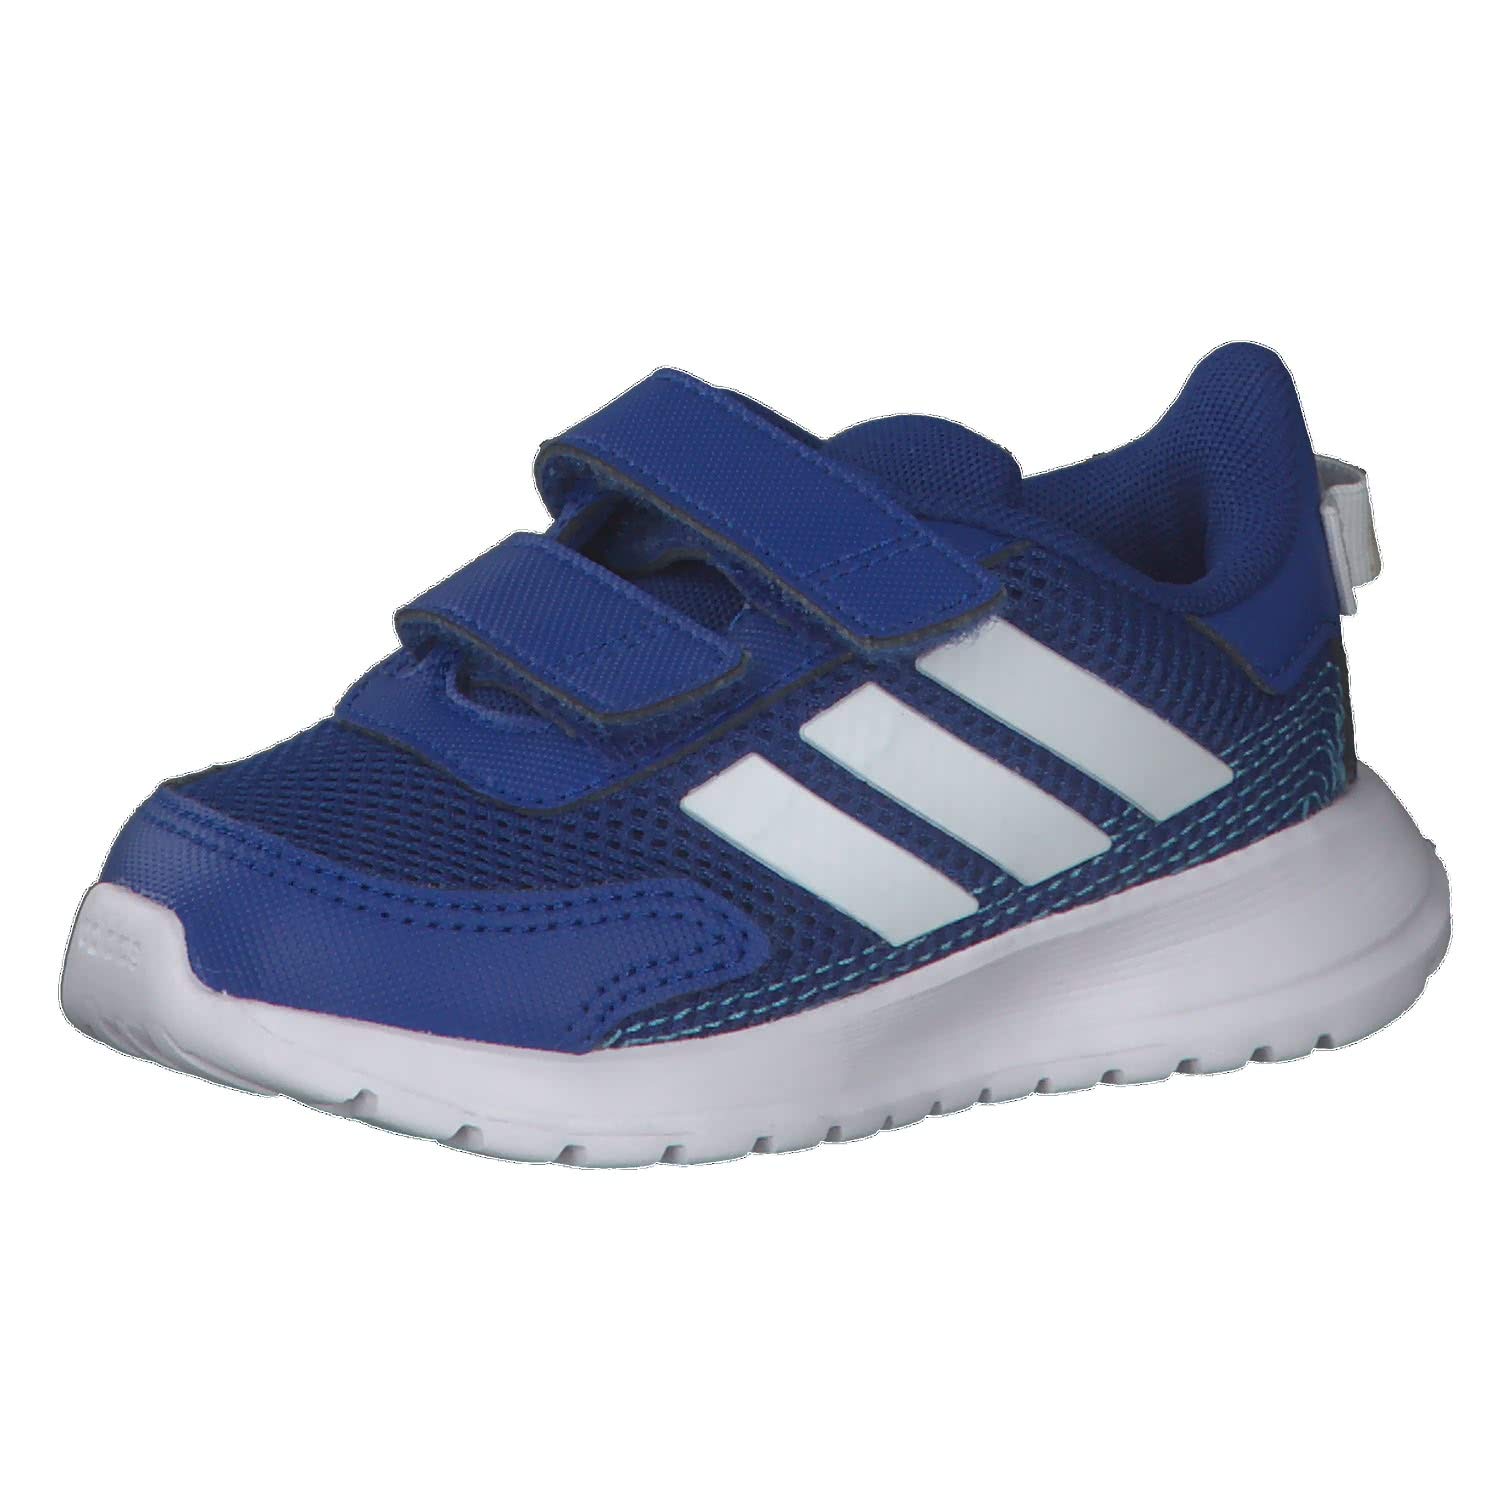 adidas Jungen Unisex Kinder TENSAUR Run I Running Shoe, Team Royal Blue Footwear White Bright Cyan, 20 EU